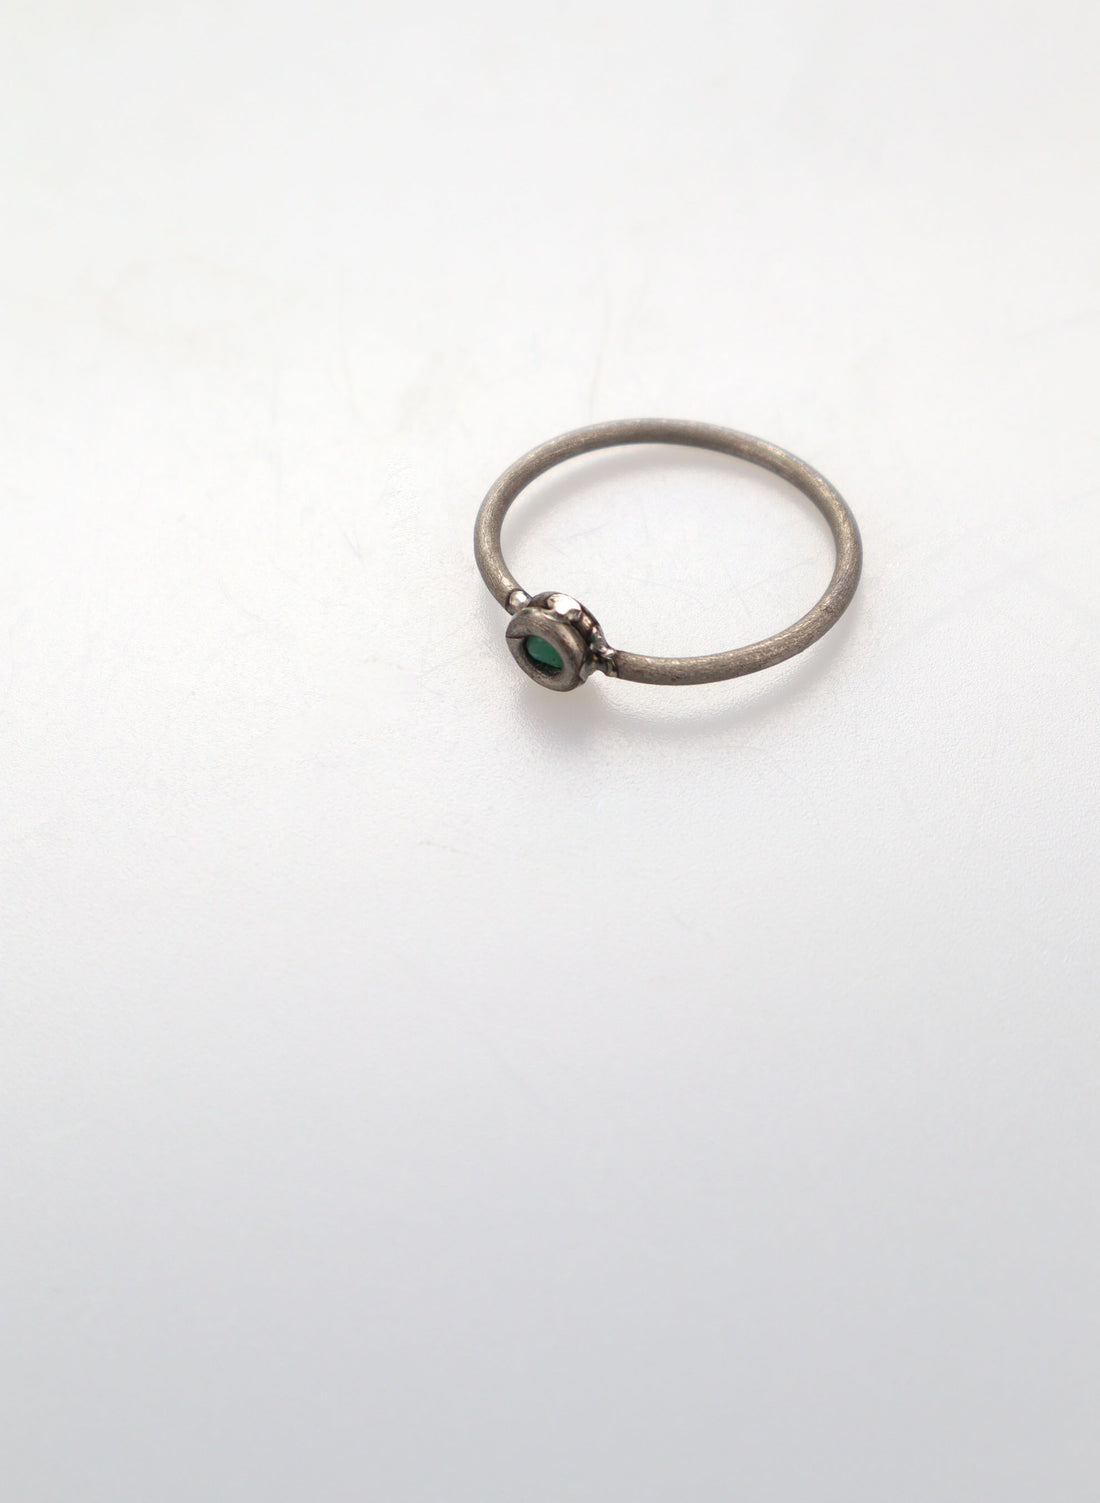 Faceted Untreated Emerald Titanium Ring